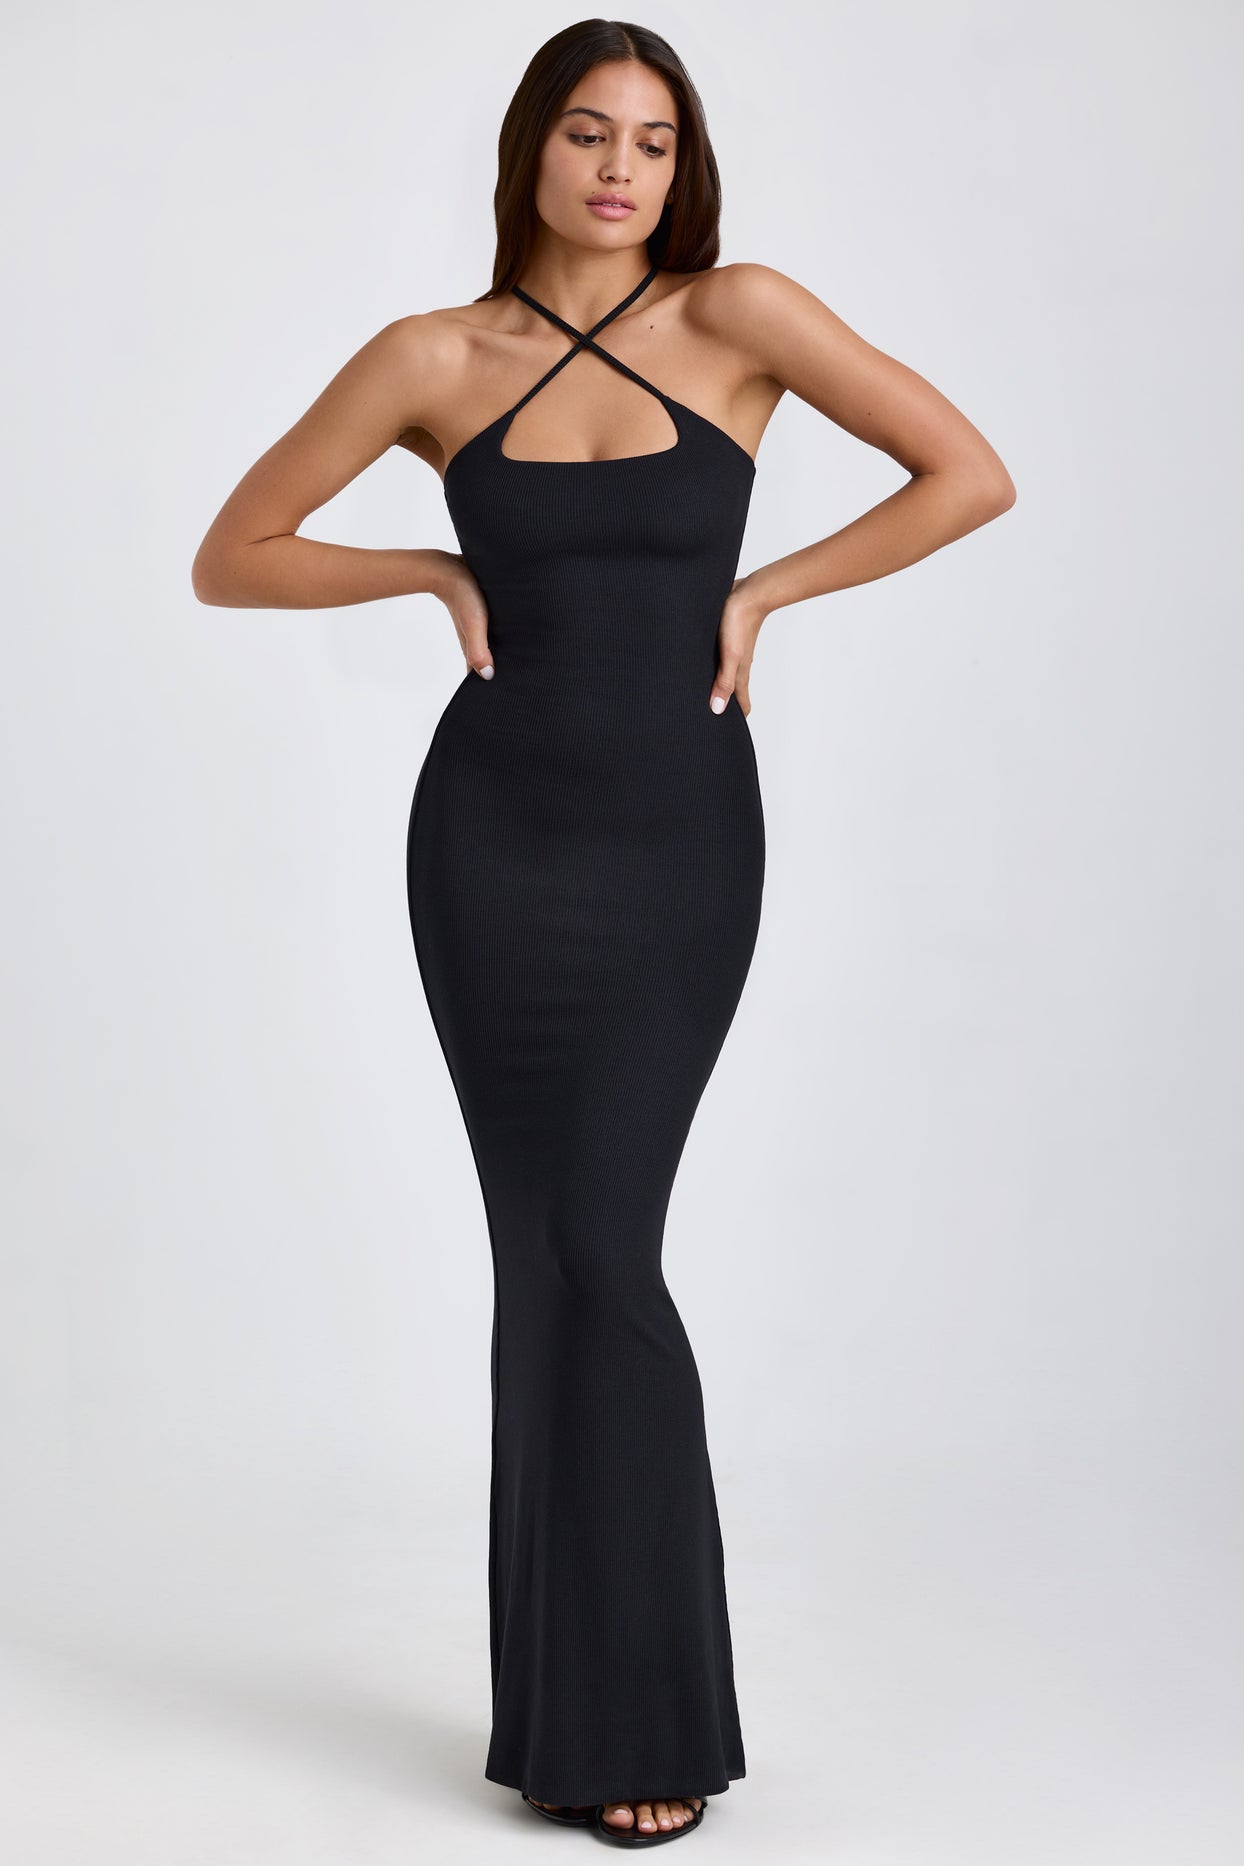 Prążkowana modalna sukienka maxi z dekoltem typu halter w kolorze czarnym